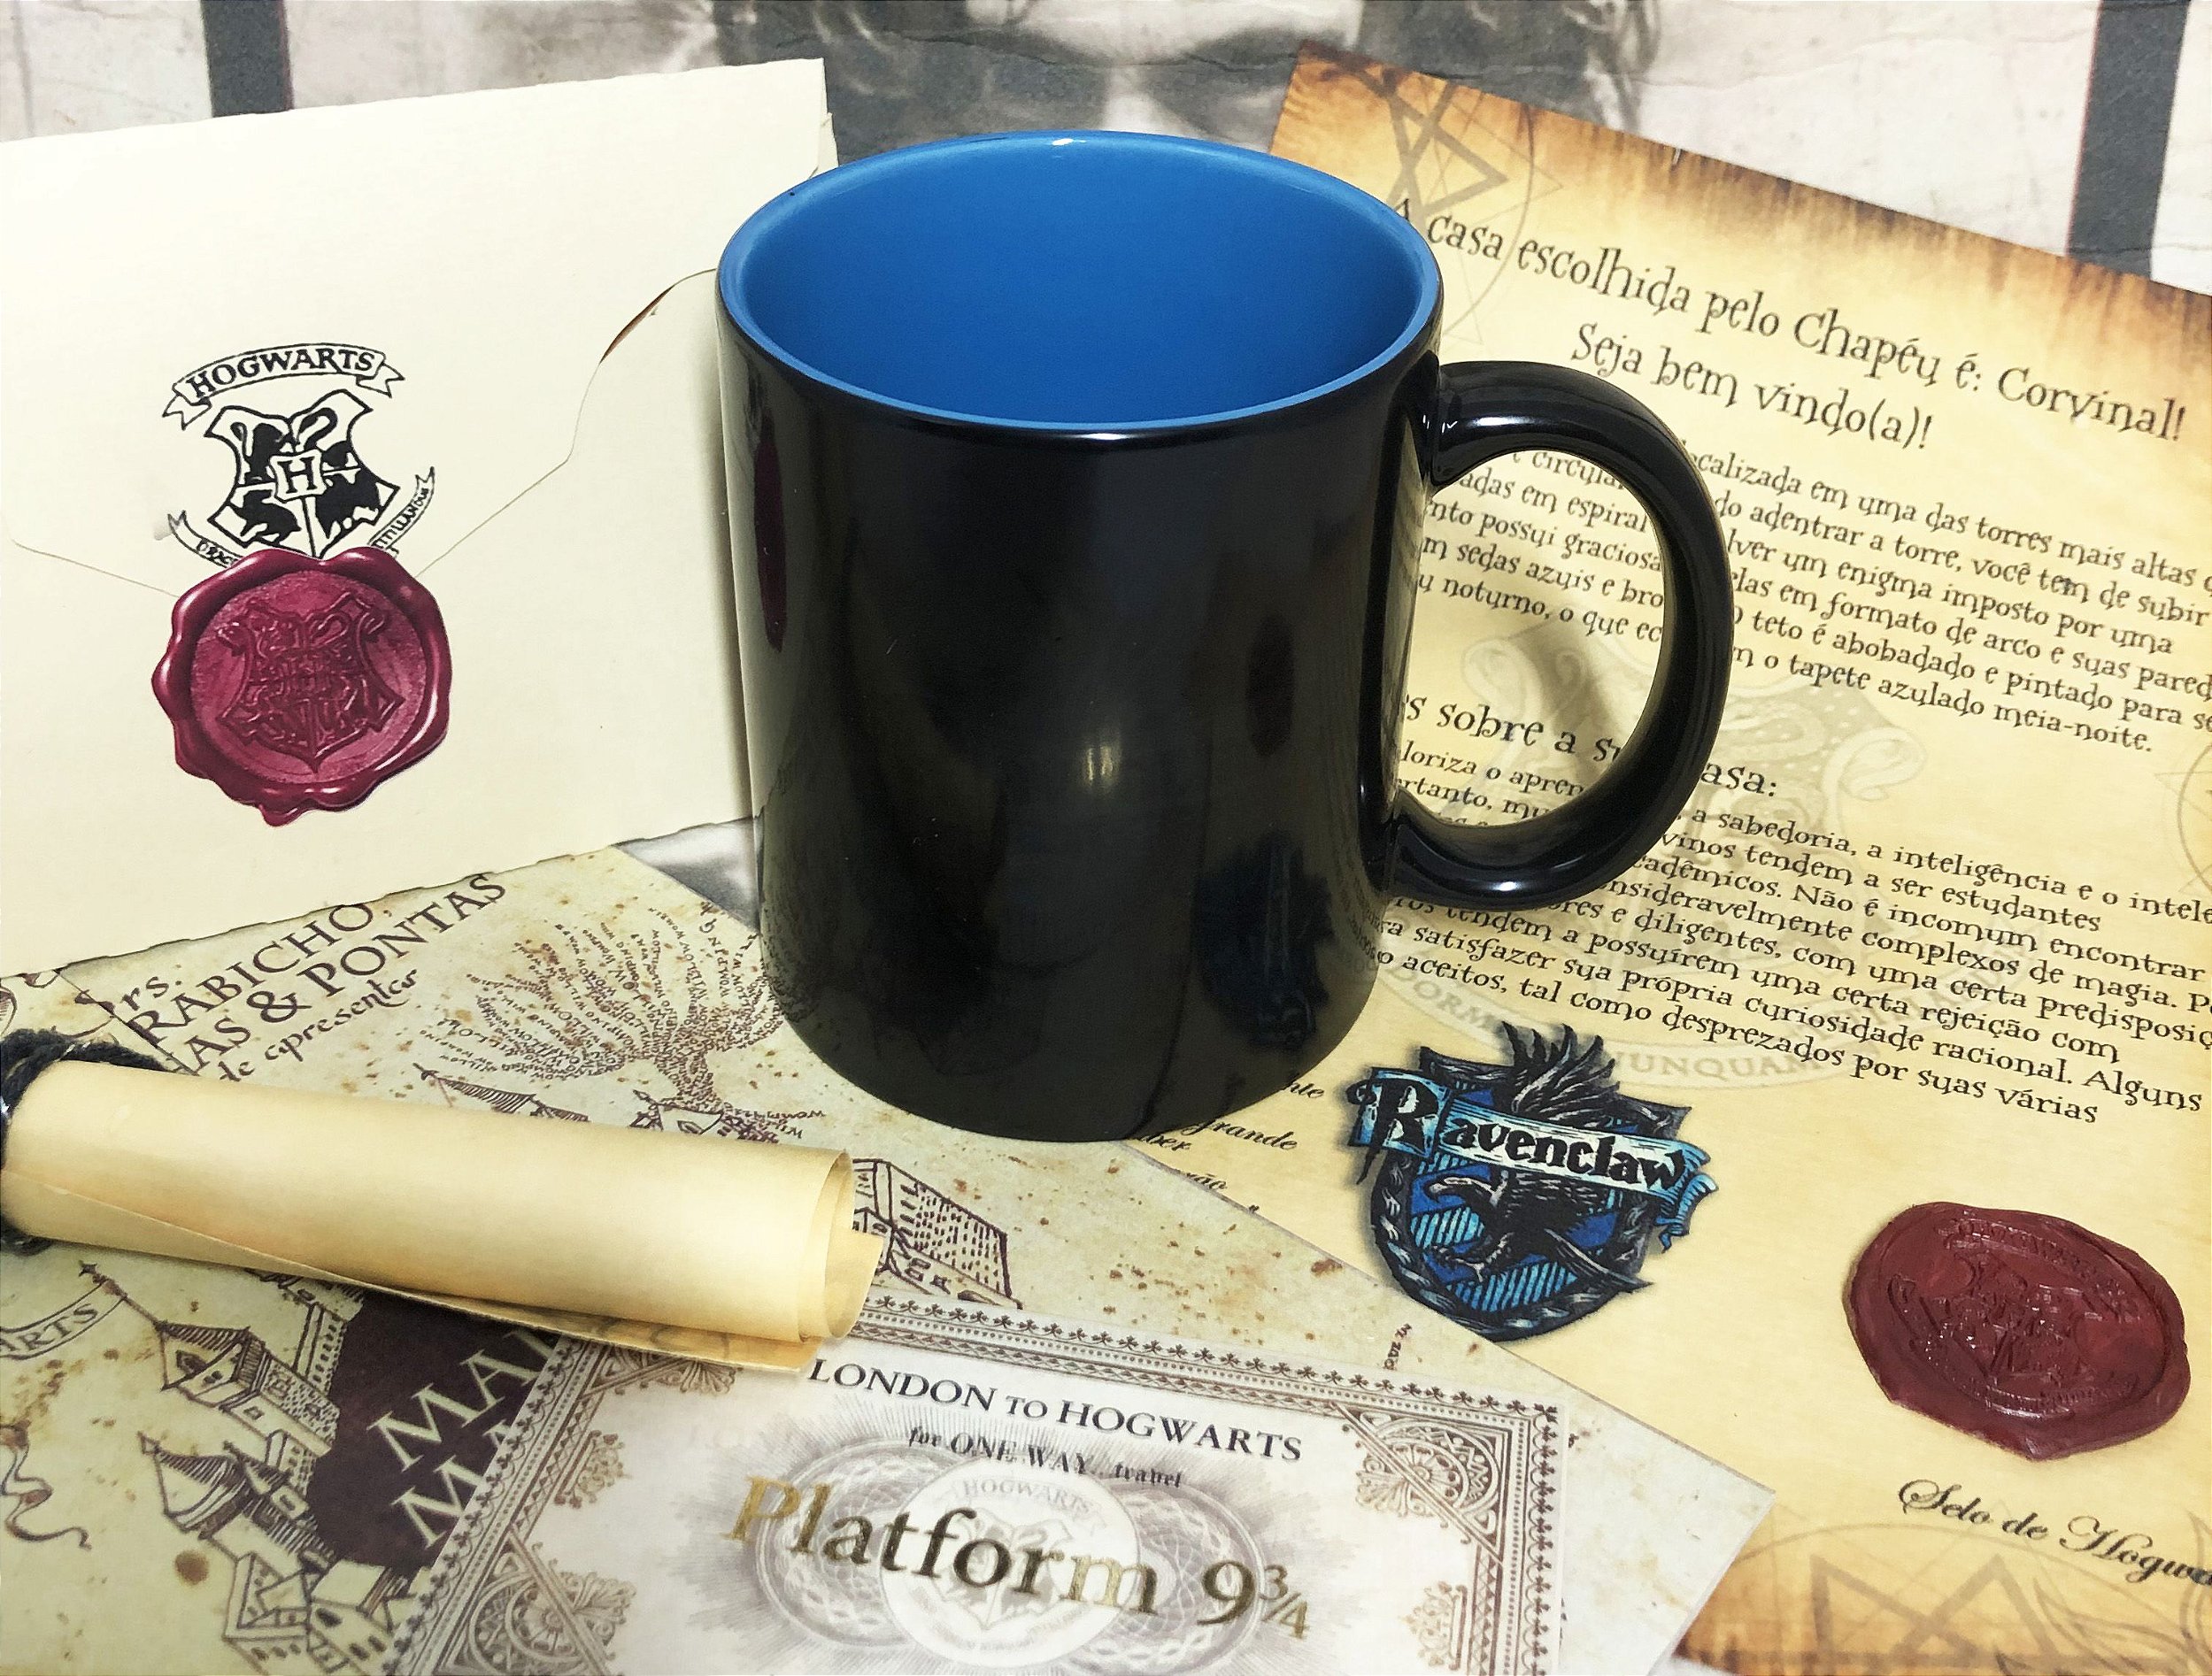 Kit Harry Potter – Convocação - Com Carta + Mapa + Bilhete + Lista